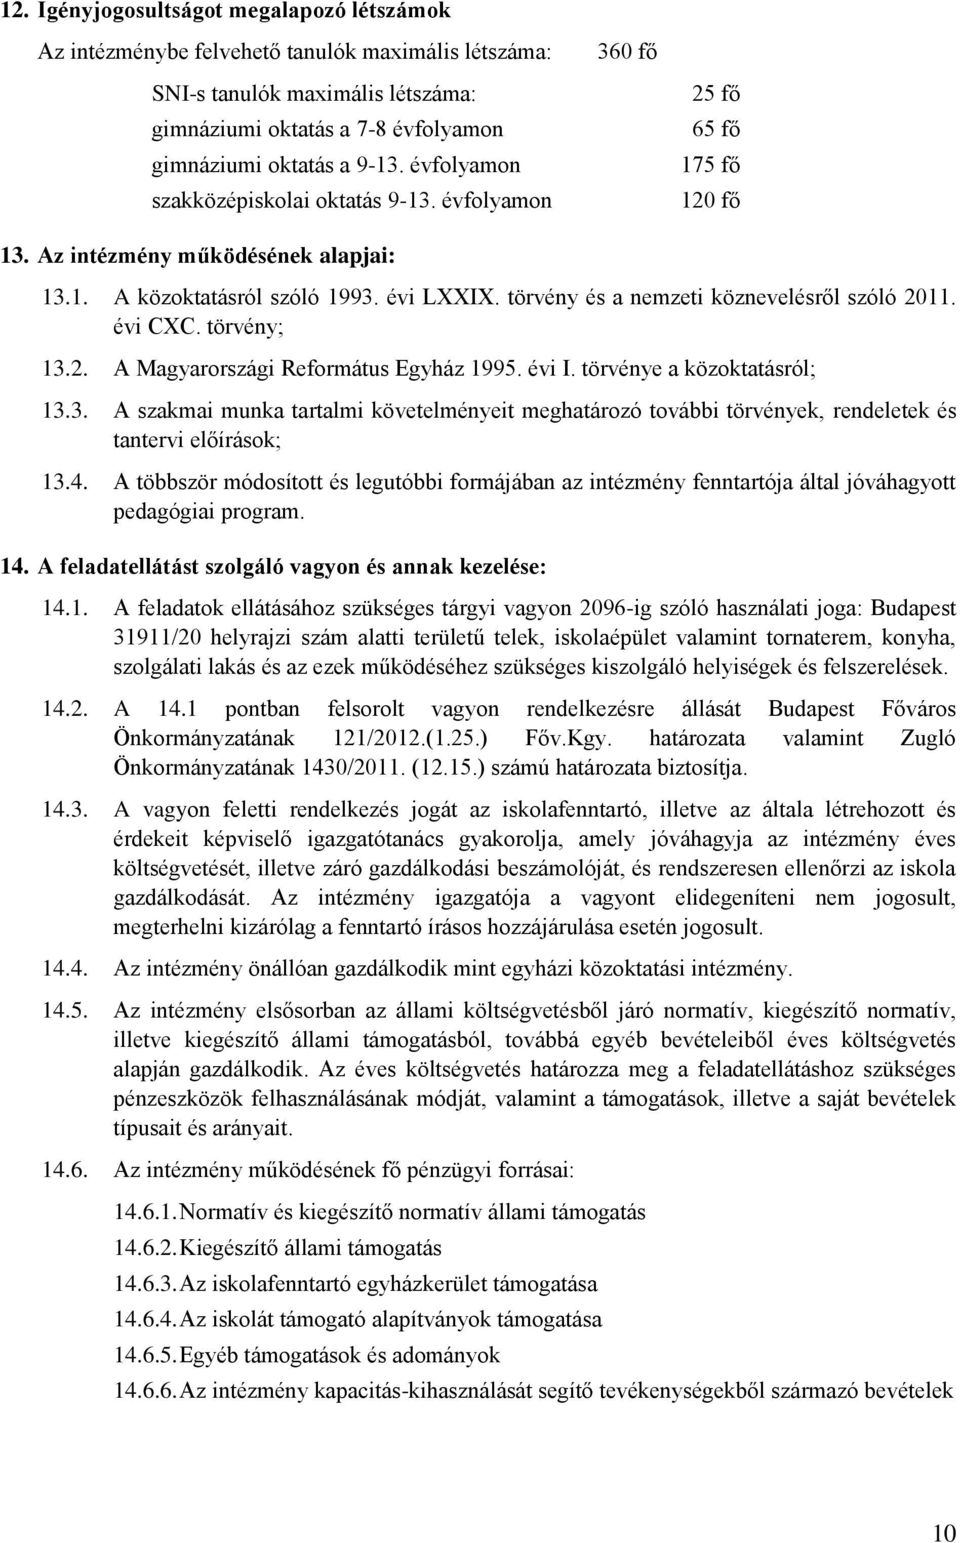 törvény és a nemzeti köznevelésről szóló 2011. évi CXC. törvény; 13.2. A Magyarországi Református Egyház 1995. évi I. törvénye a közoktatásról; 13.3. A szakmai munka tartalmi követelményeit meghatározó további törvények, rendeletek és tantervi előírások; 13.